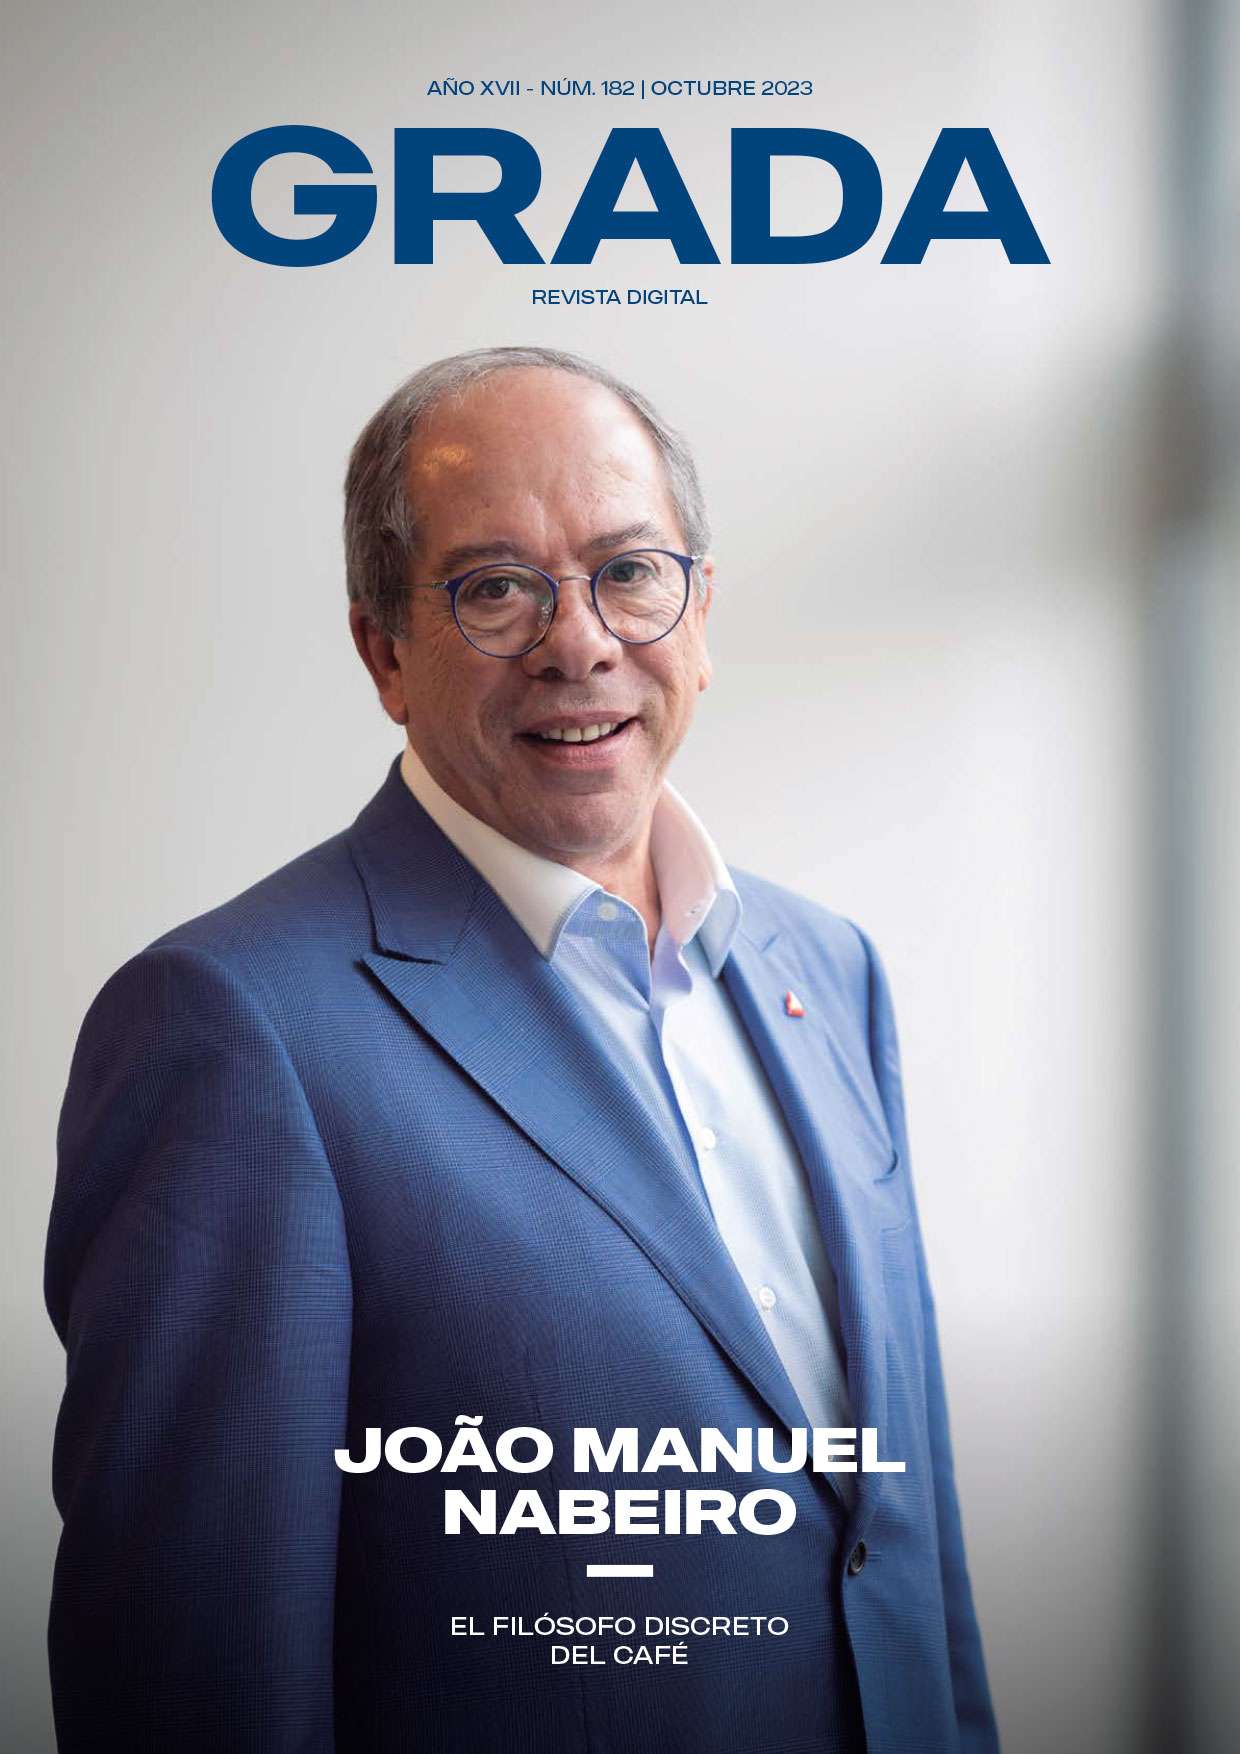 Revista Grada 182. João Manuel Nabeiro. El filósofo discreto del café